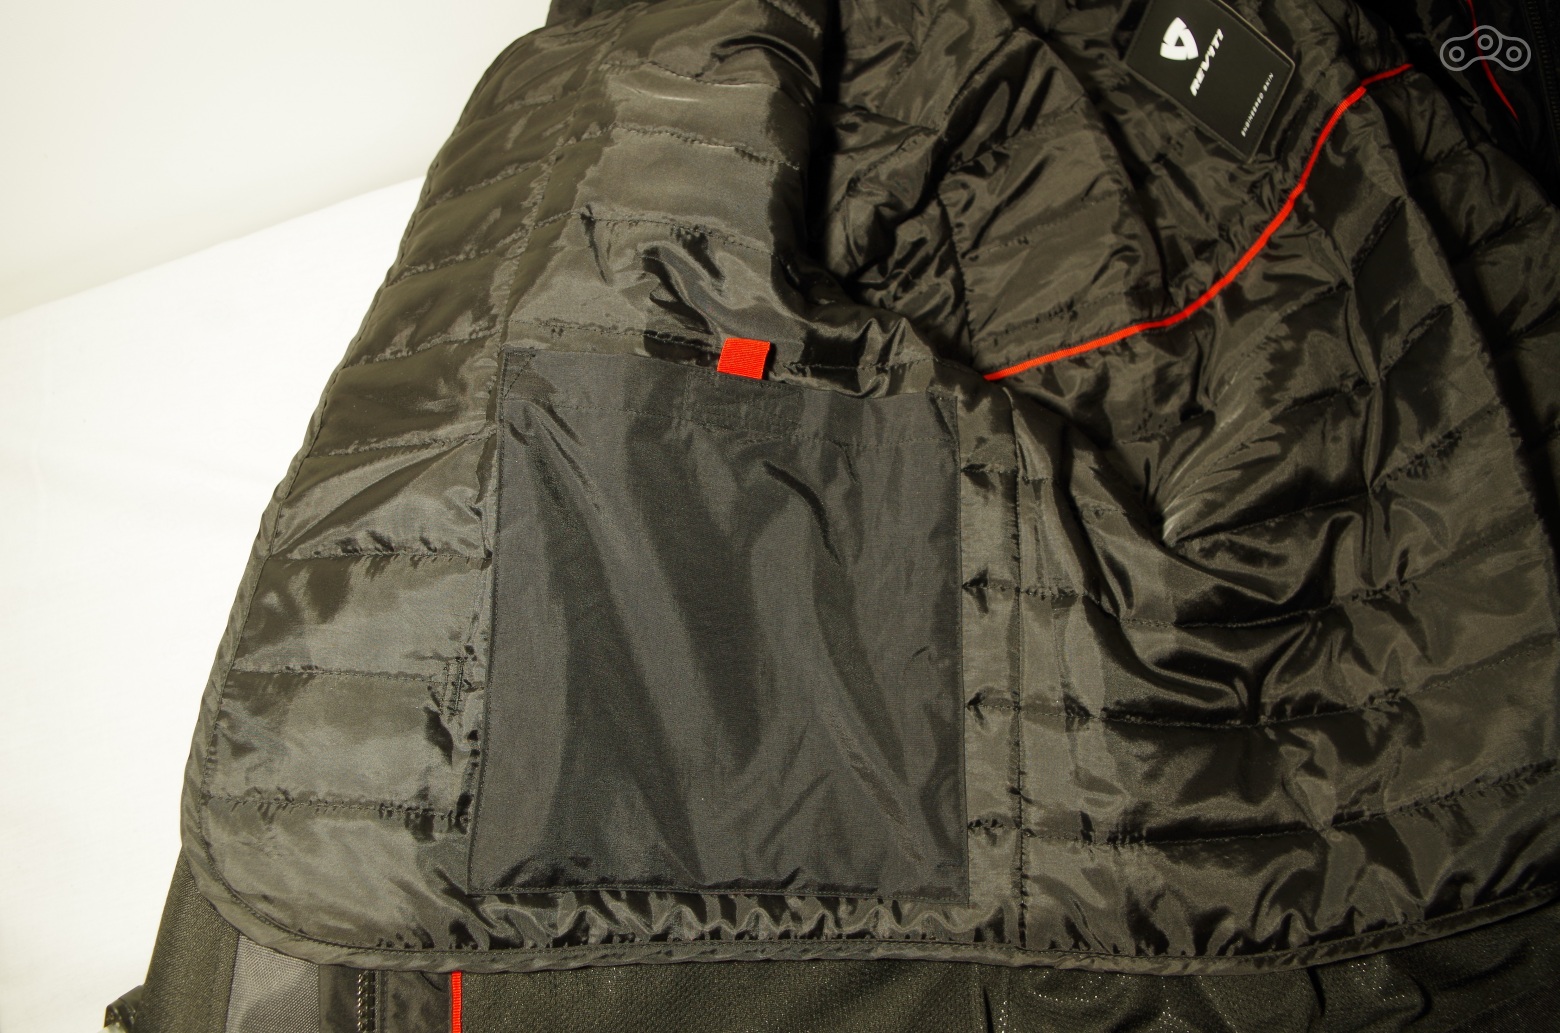 Большой карман подкладки дублируется аналогичным, расположенным на куртке.